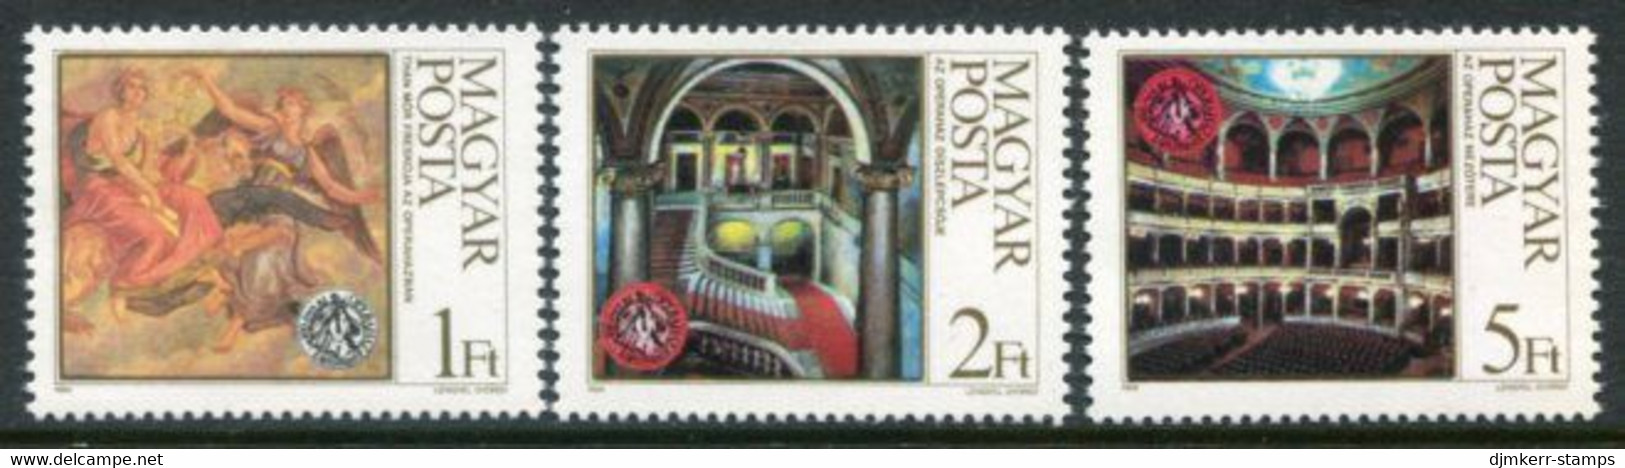 HUNGARY 1984 Opera House Centenary  MNH / **.  Michel 3697-99 - Ongebruikt